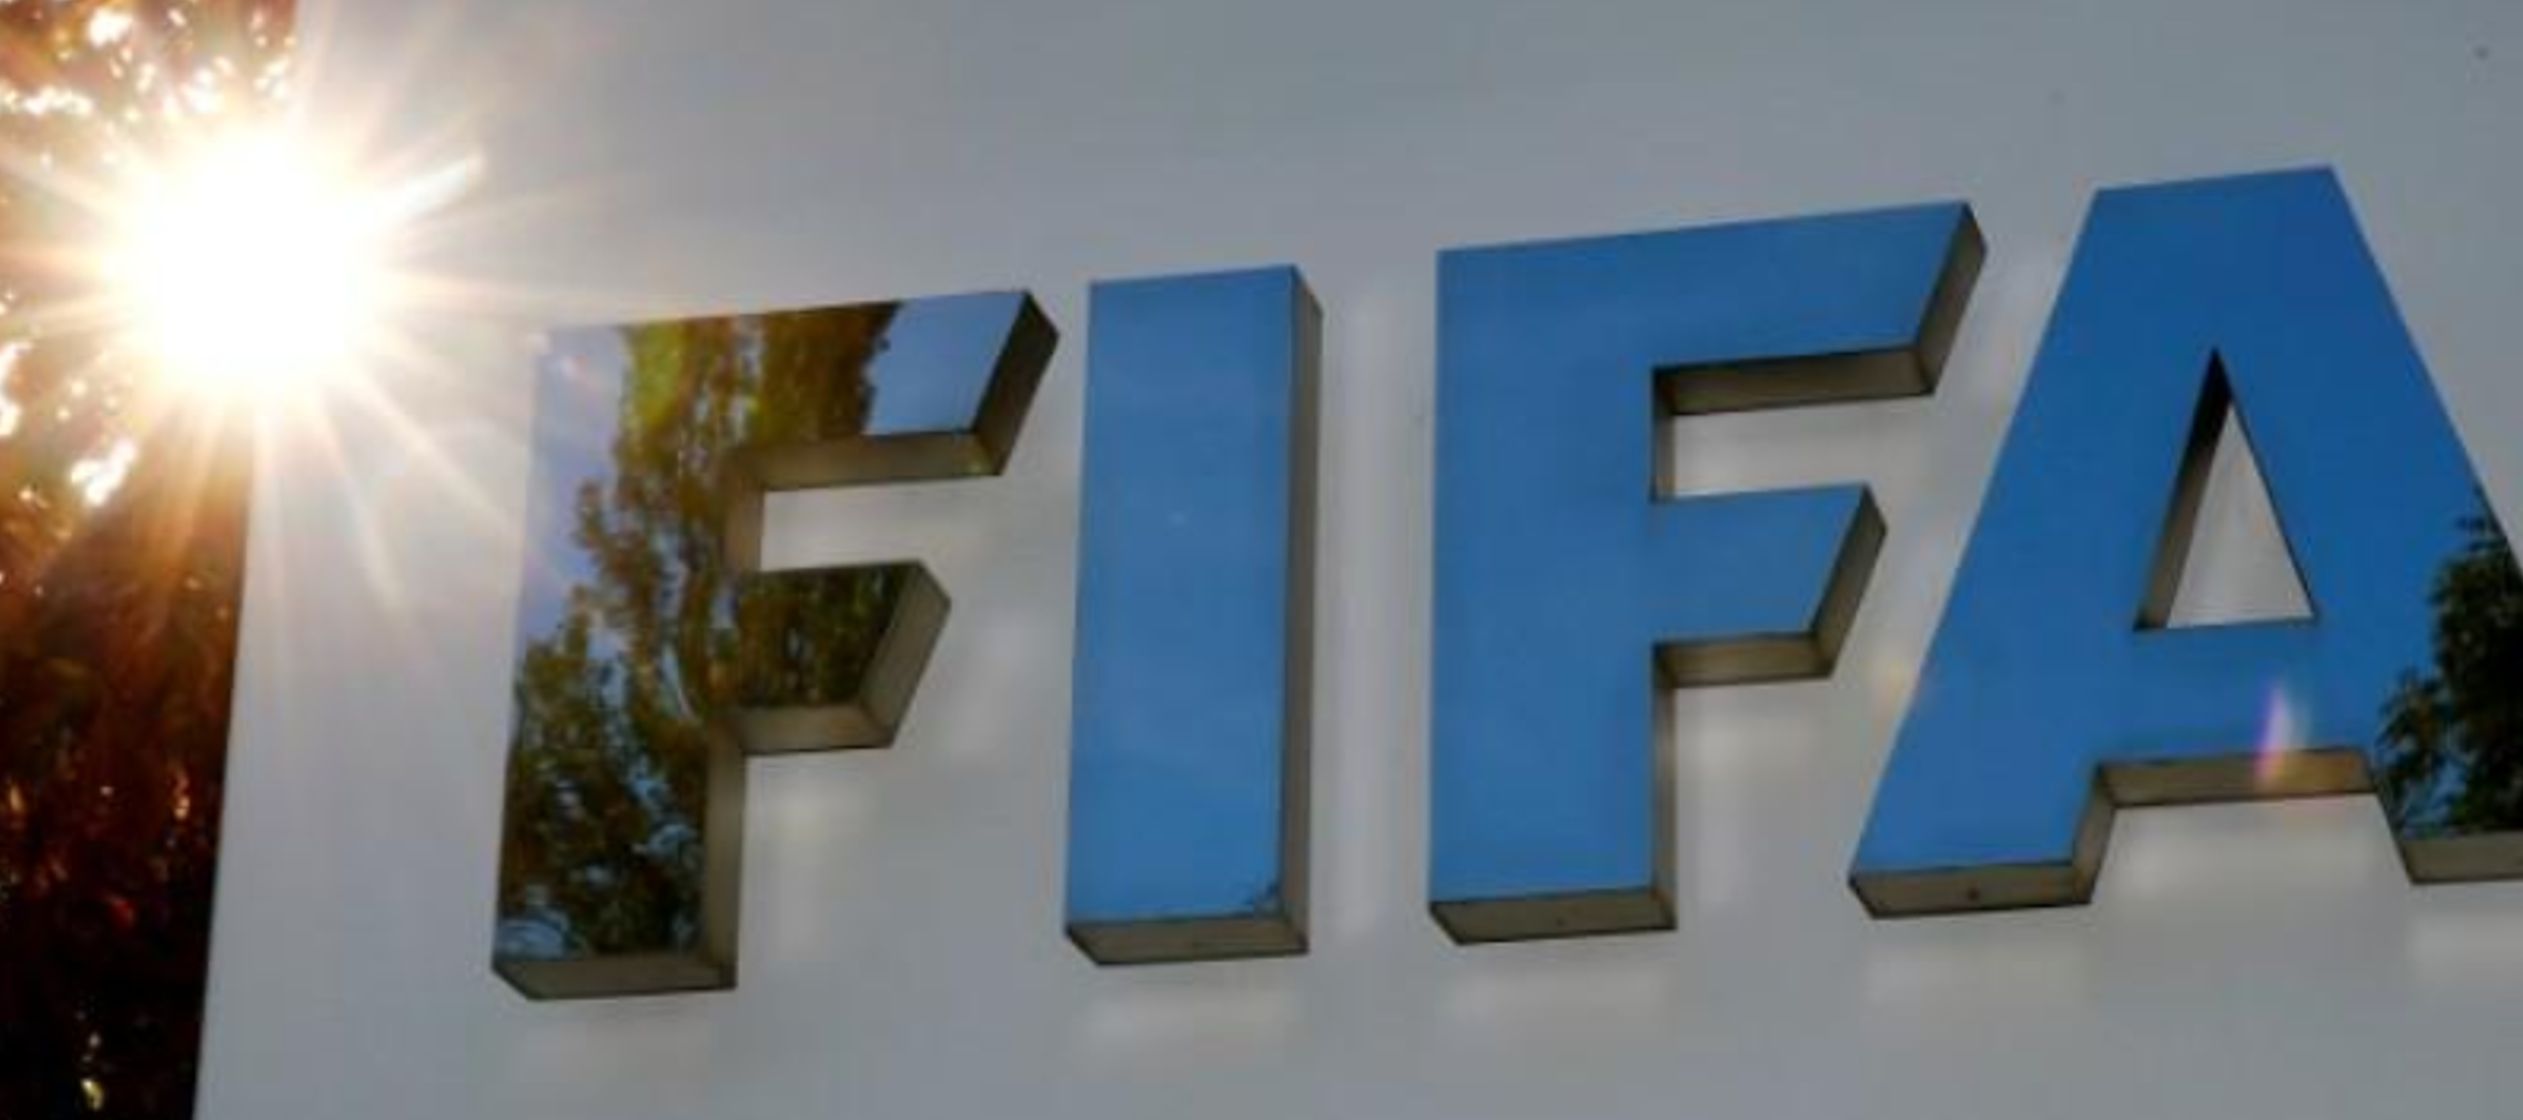 La FIFA dijo que buscará duplicar la cantidad de jugadoras a 60 millones para el 2026 y...